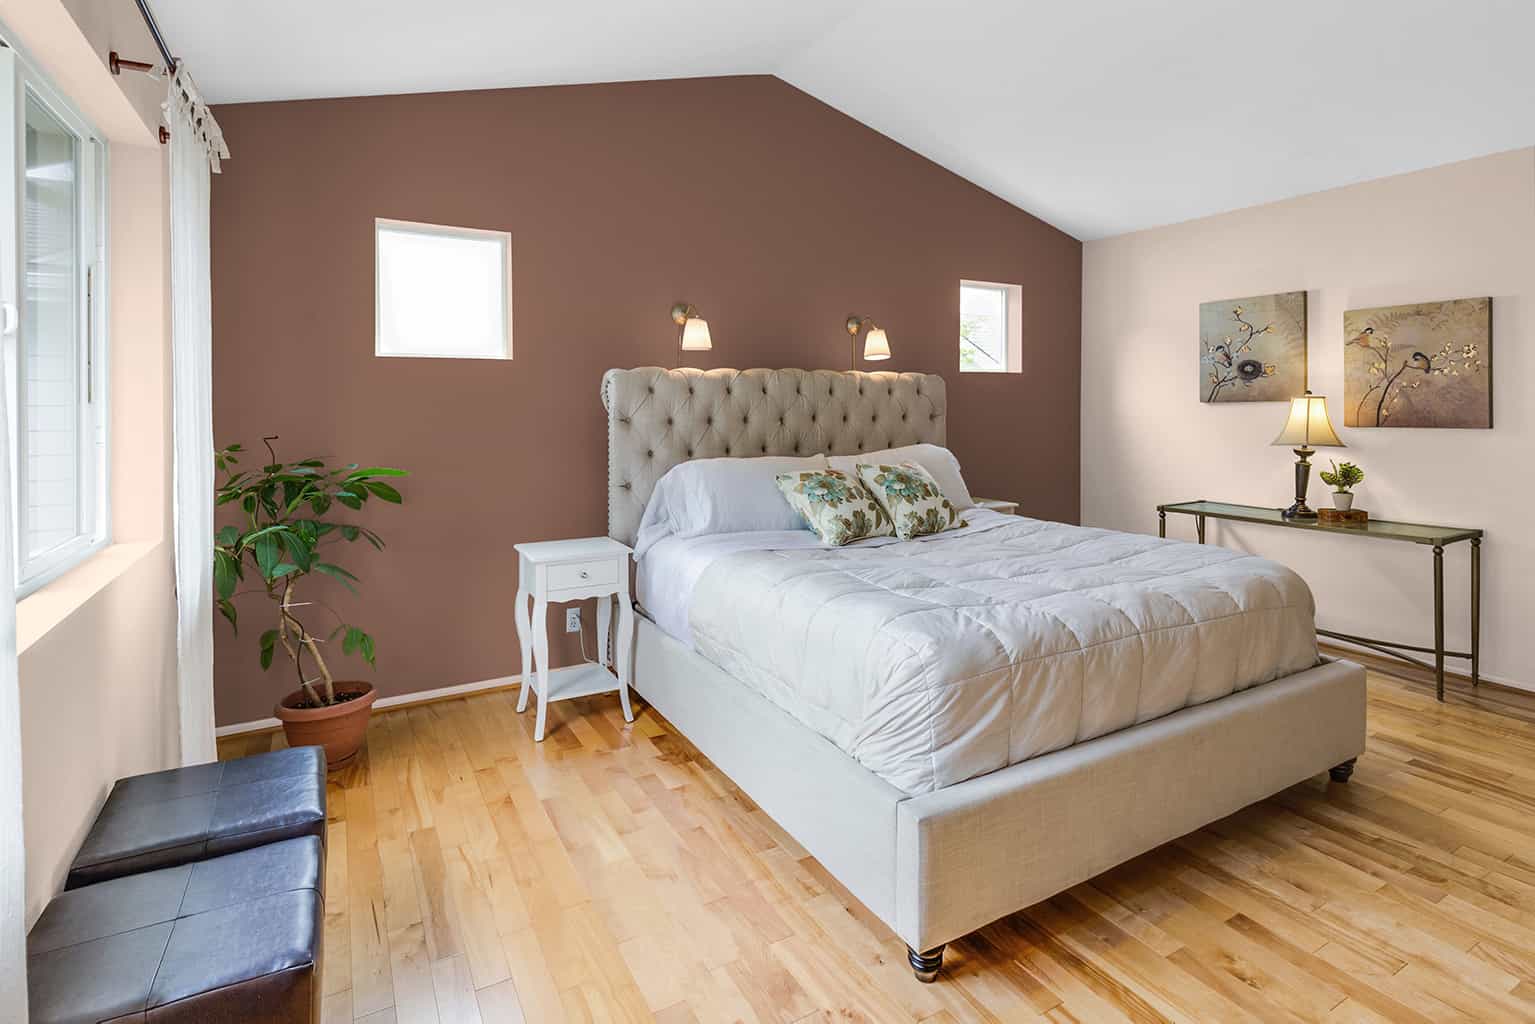 choosing color of bedroom furniture